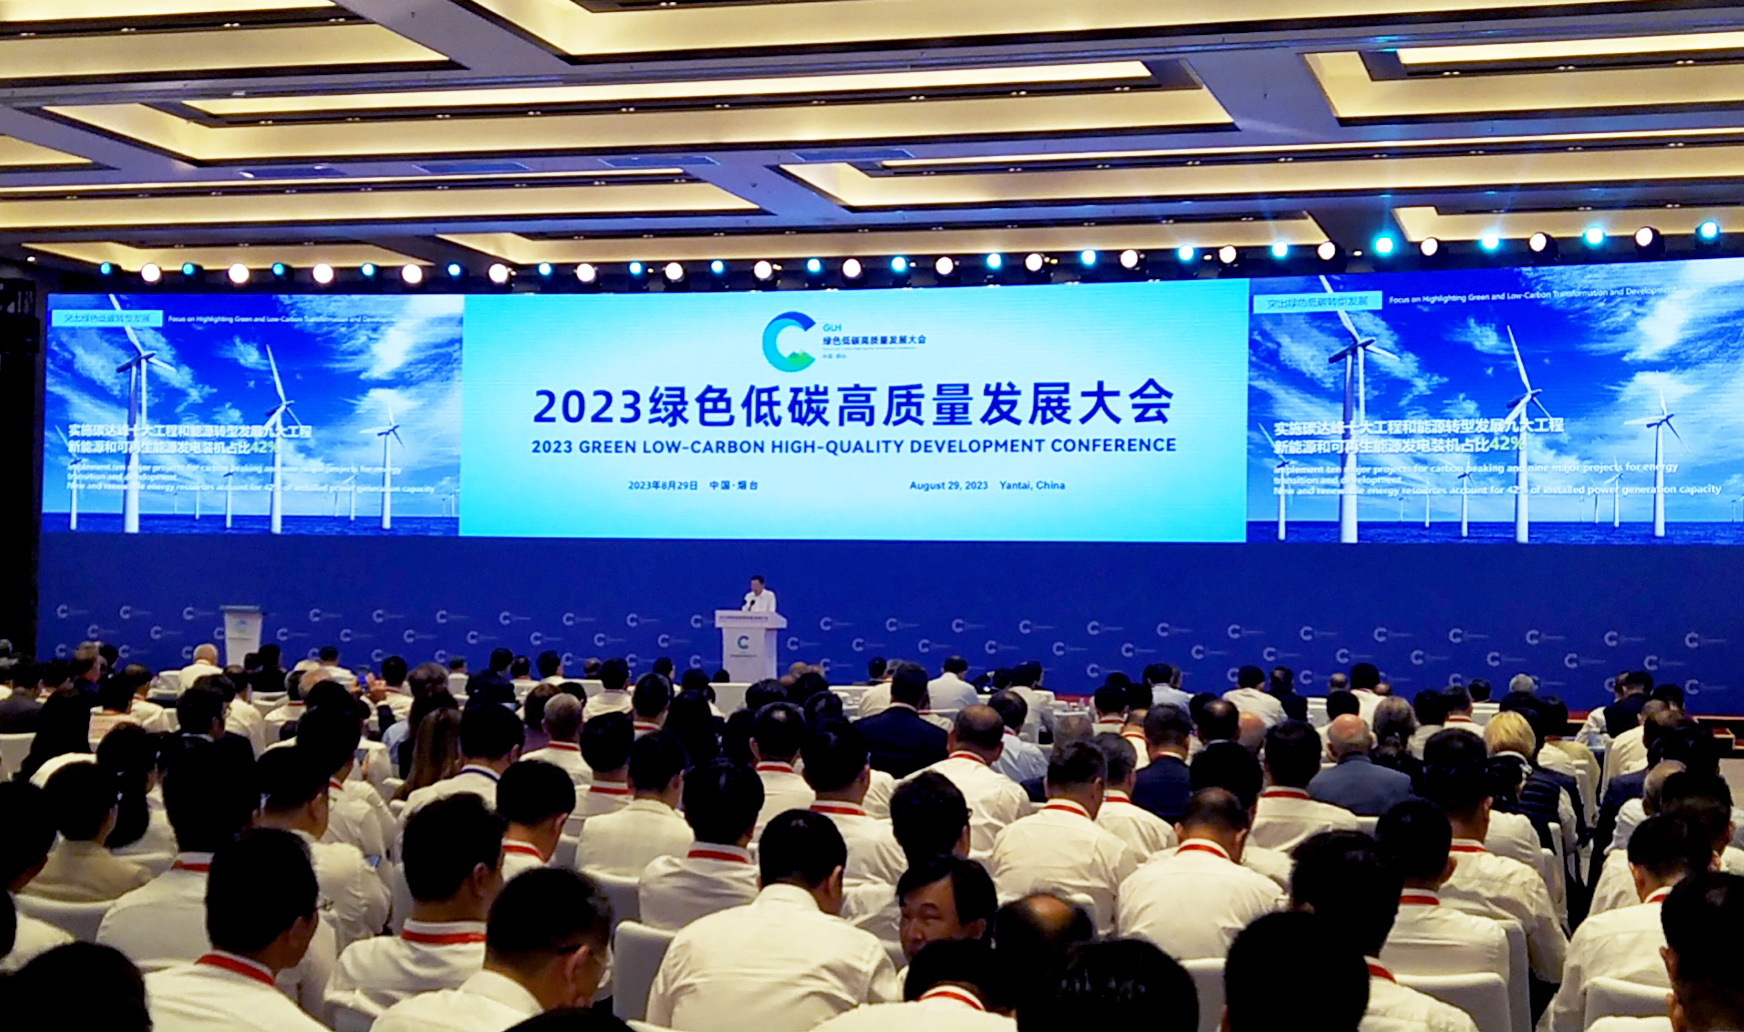 Hội nghị Phát triển Xanh, Cacbon Thấp, Chất lượng Cao năm 2023 được tổ chức tại Yantai, Shandong